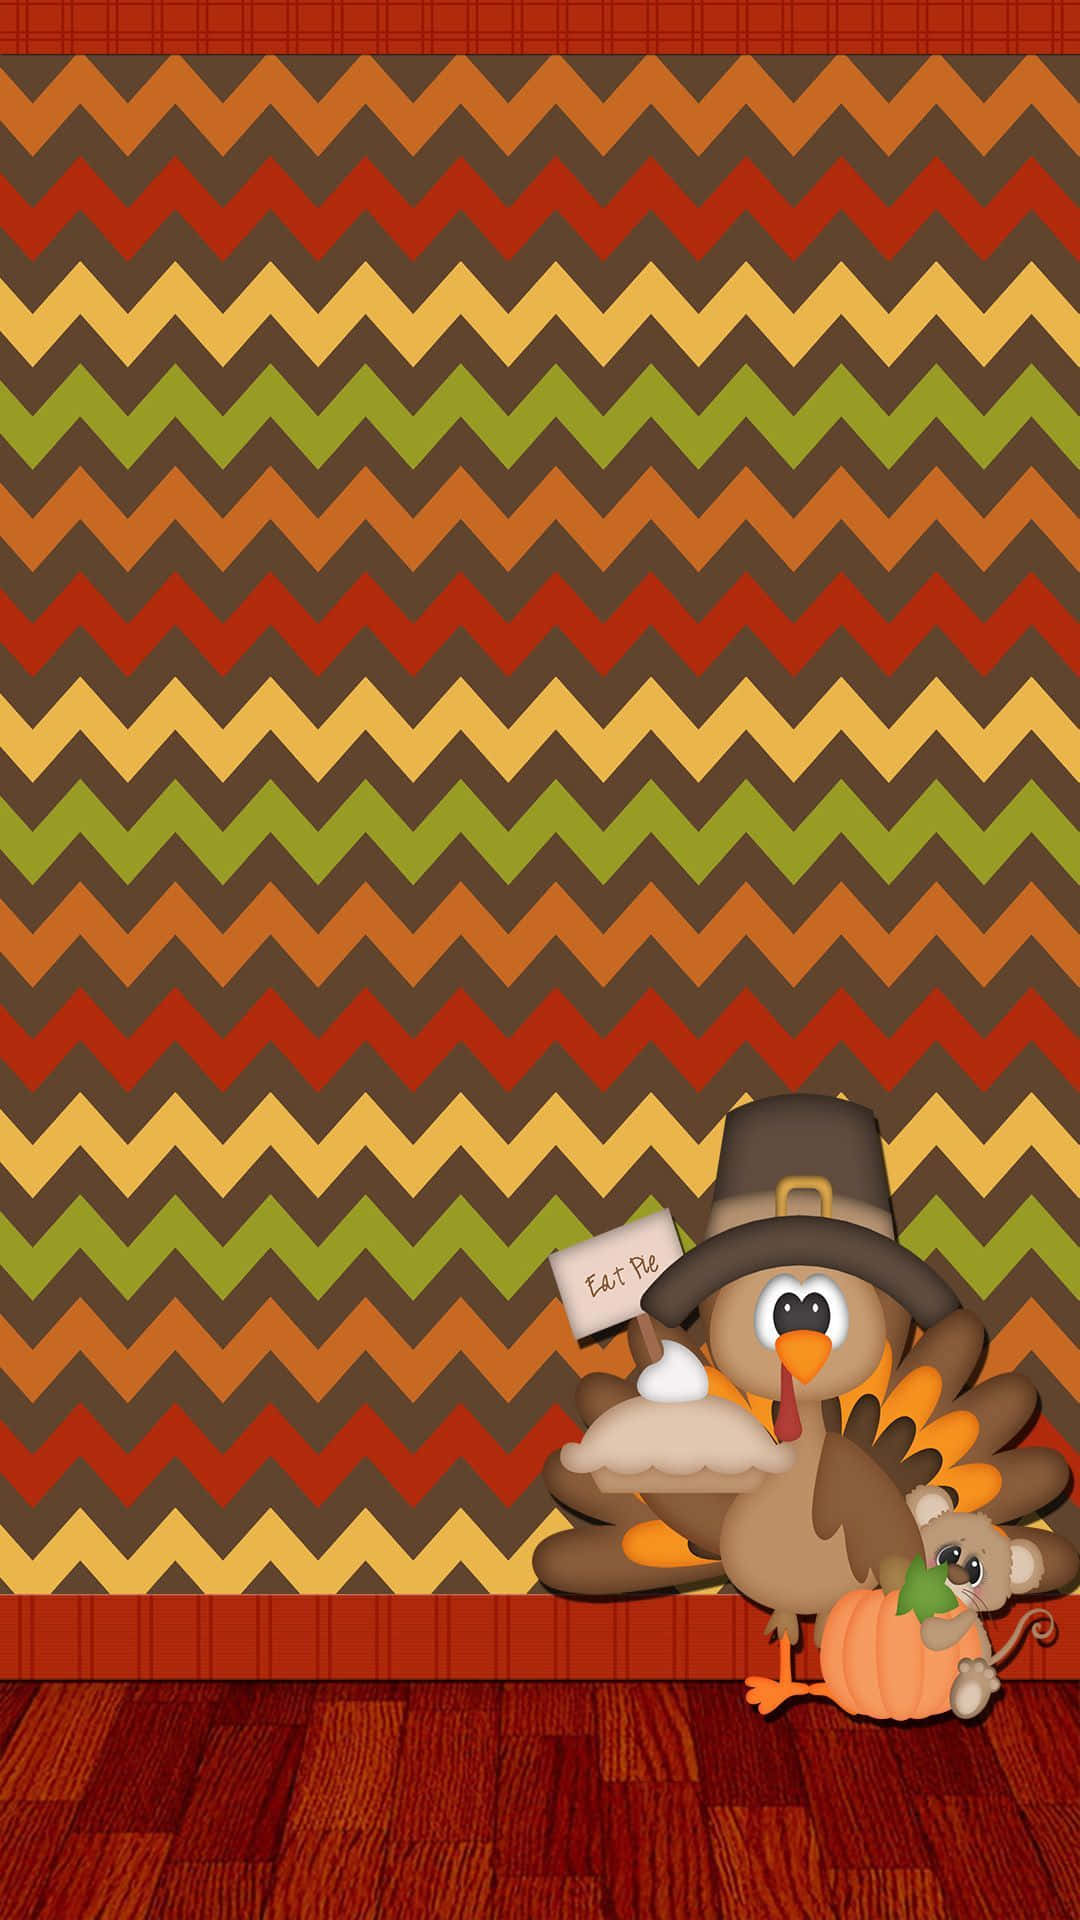 Zeigensie Ihre Dankbarkeit An Diesem Thanksgiving. Wallpaper